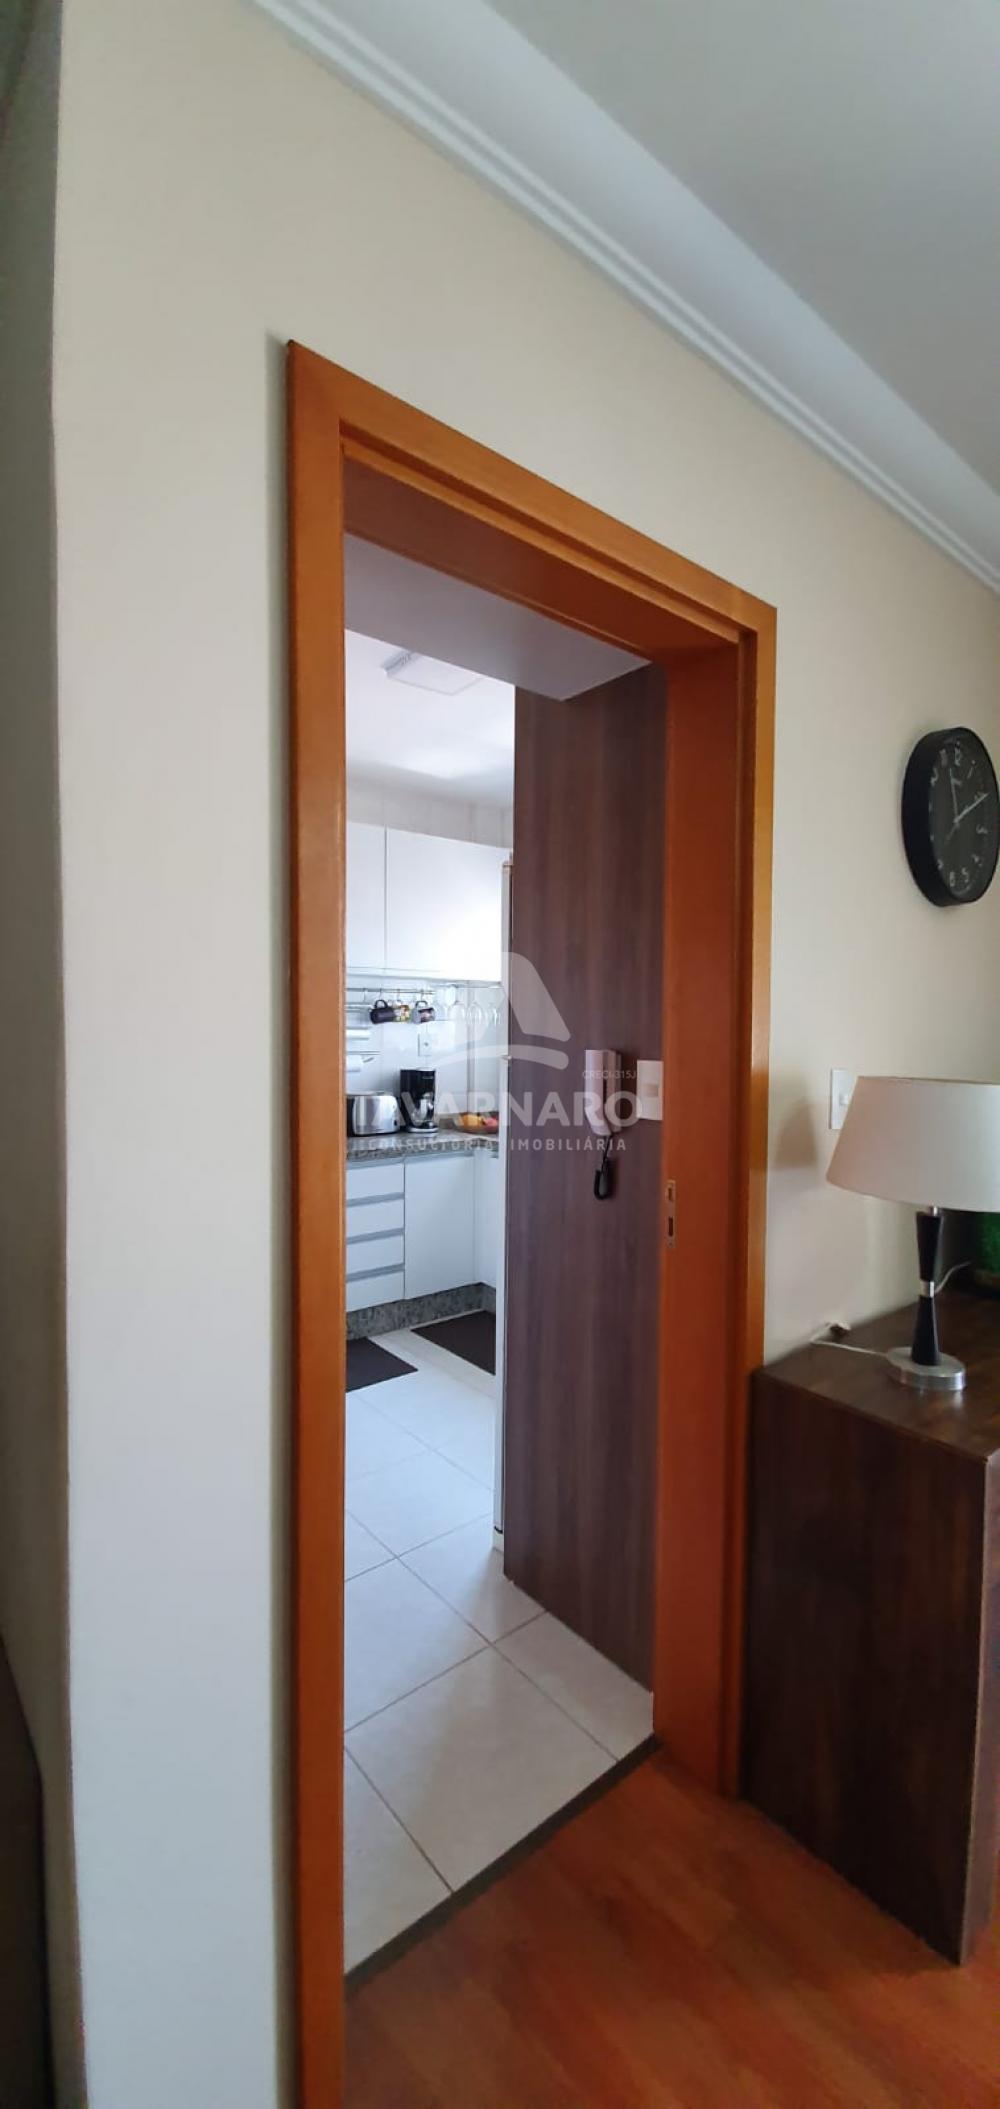 Comprar Apartamento / Padrão em Ponta Grossa R$ 490.000,00 - Foto 7